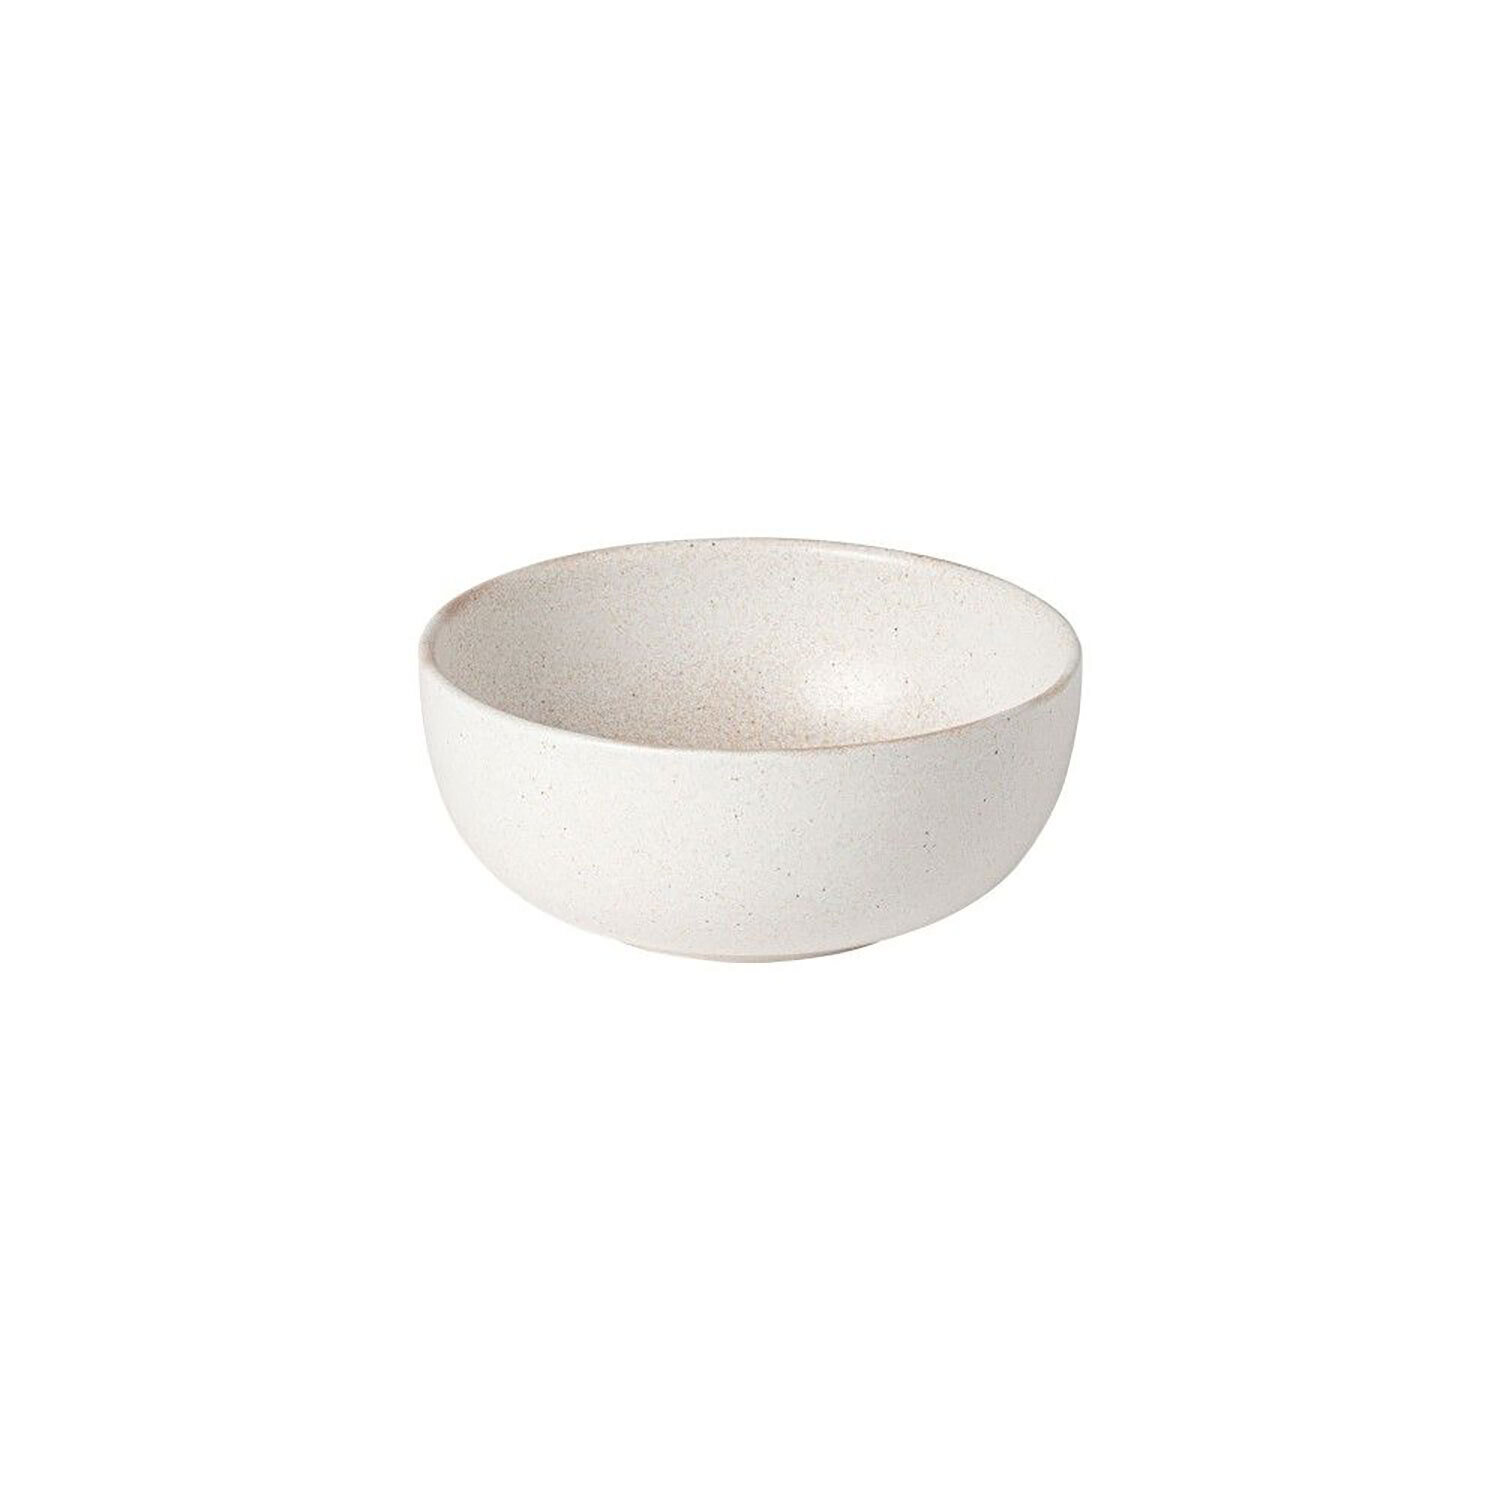 Casafina Vermont Soup Cereal Bowl Cream Set of 6 XOS151-CRM